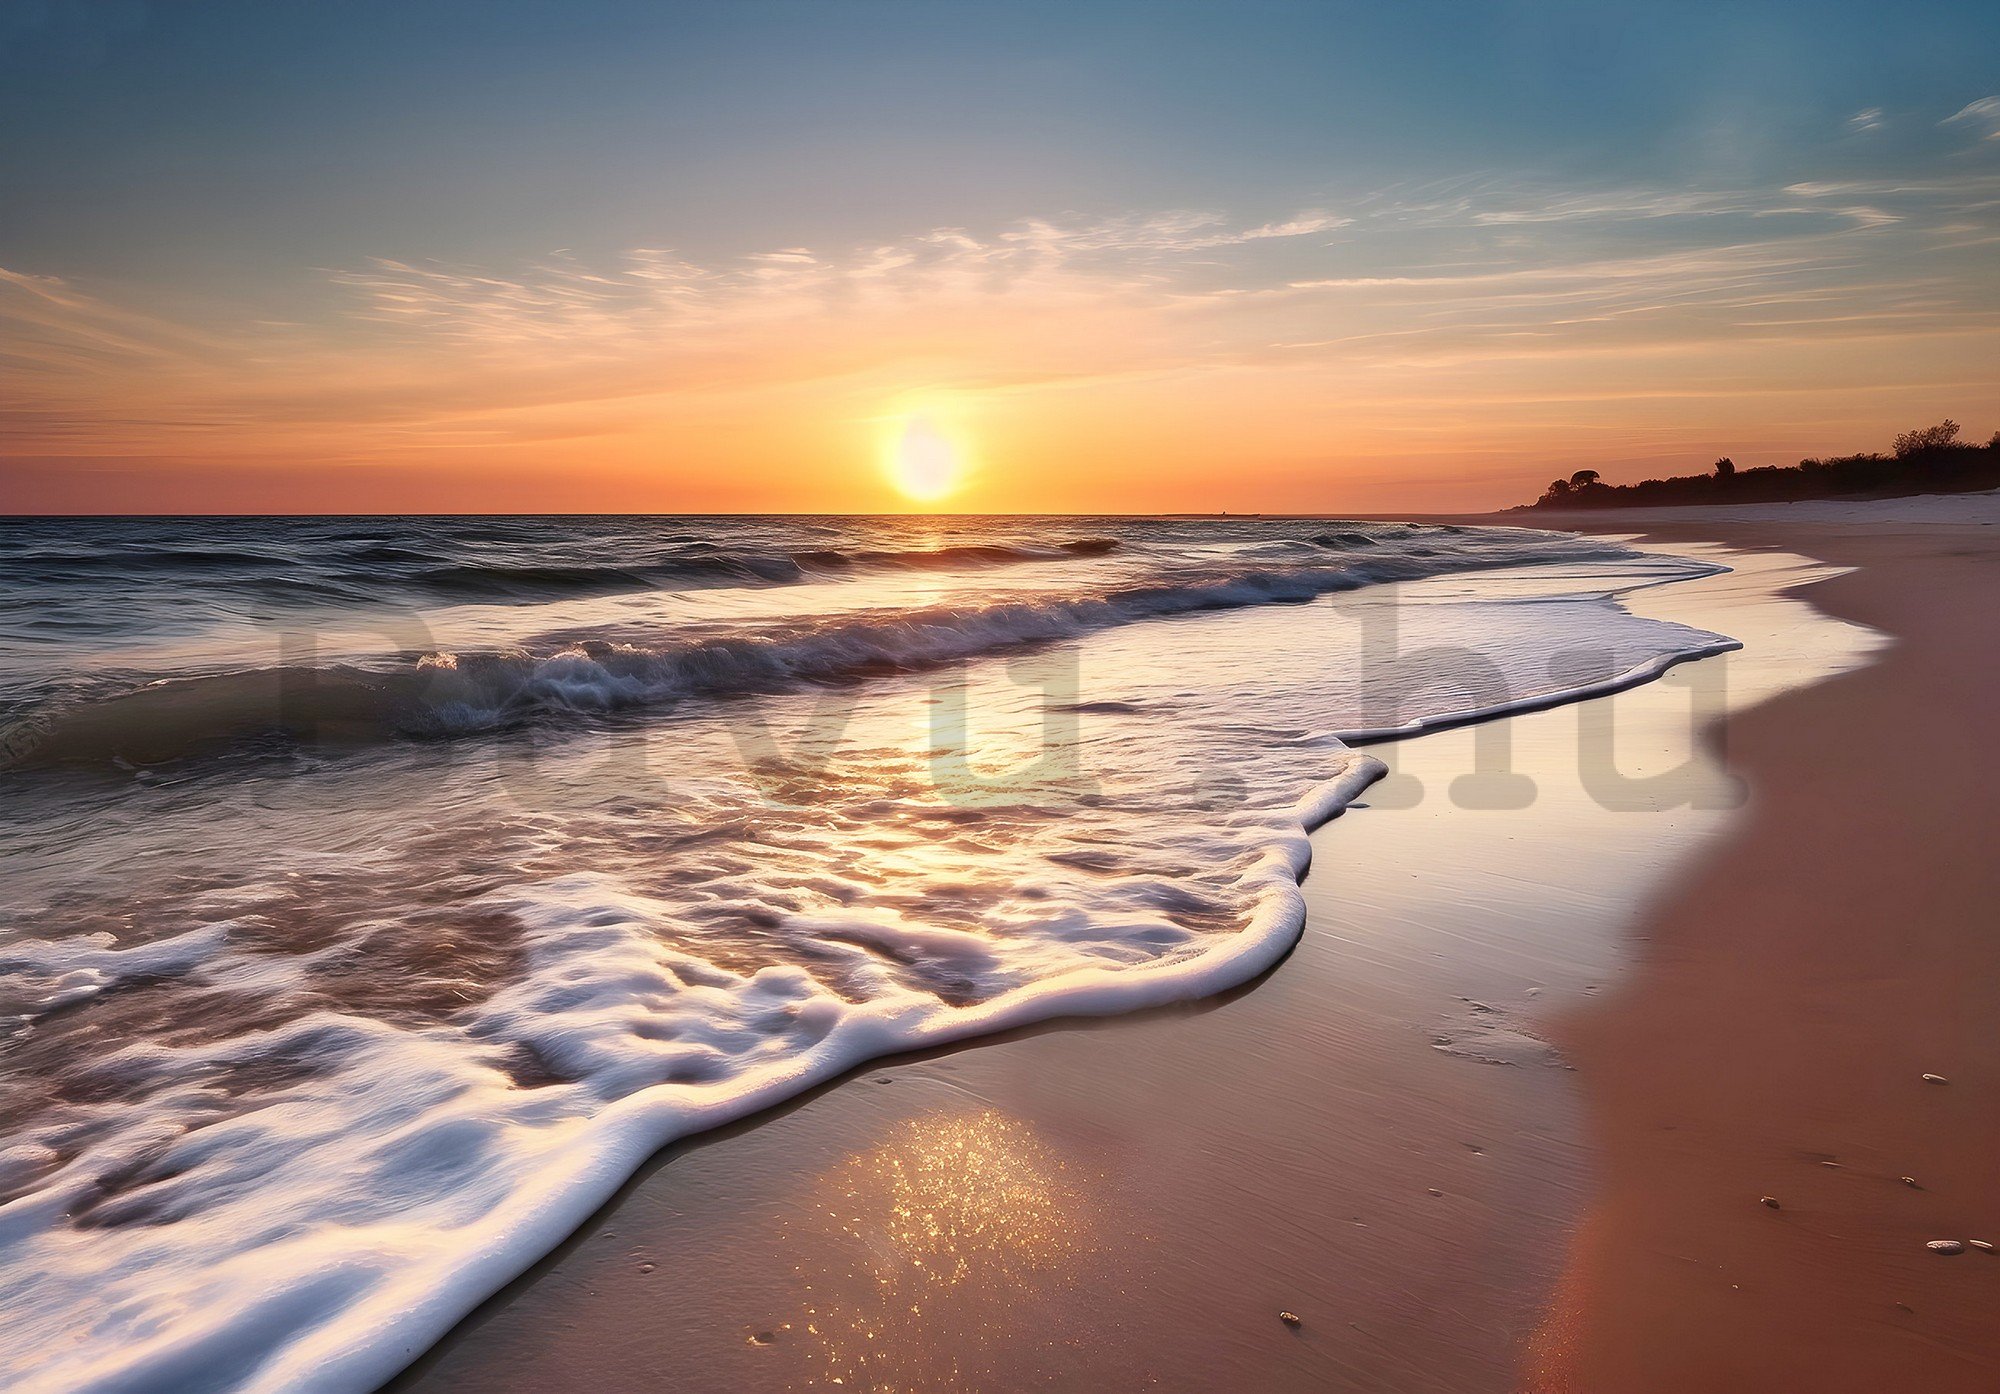 Vlies fotótapéta: Sea sunset - 416x254 cm